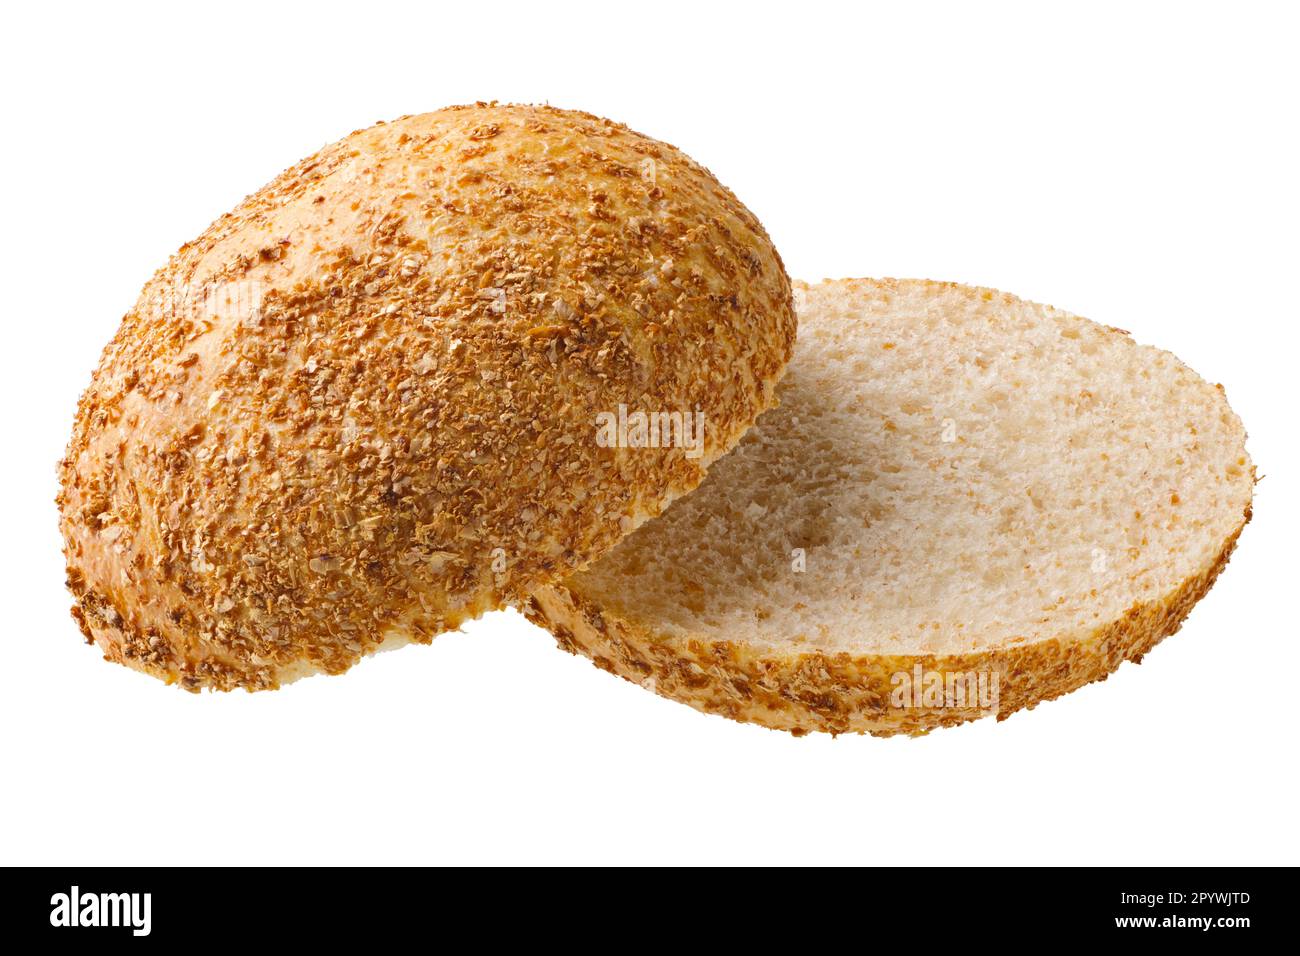 Tradizionale pane di grano duro di crusca fatto in casa, isolato su sfondo bianco Foto Stock